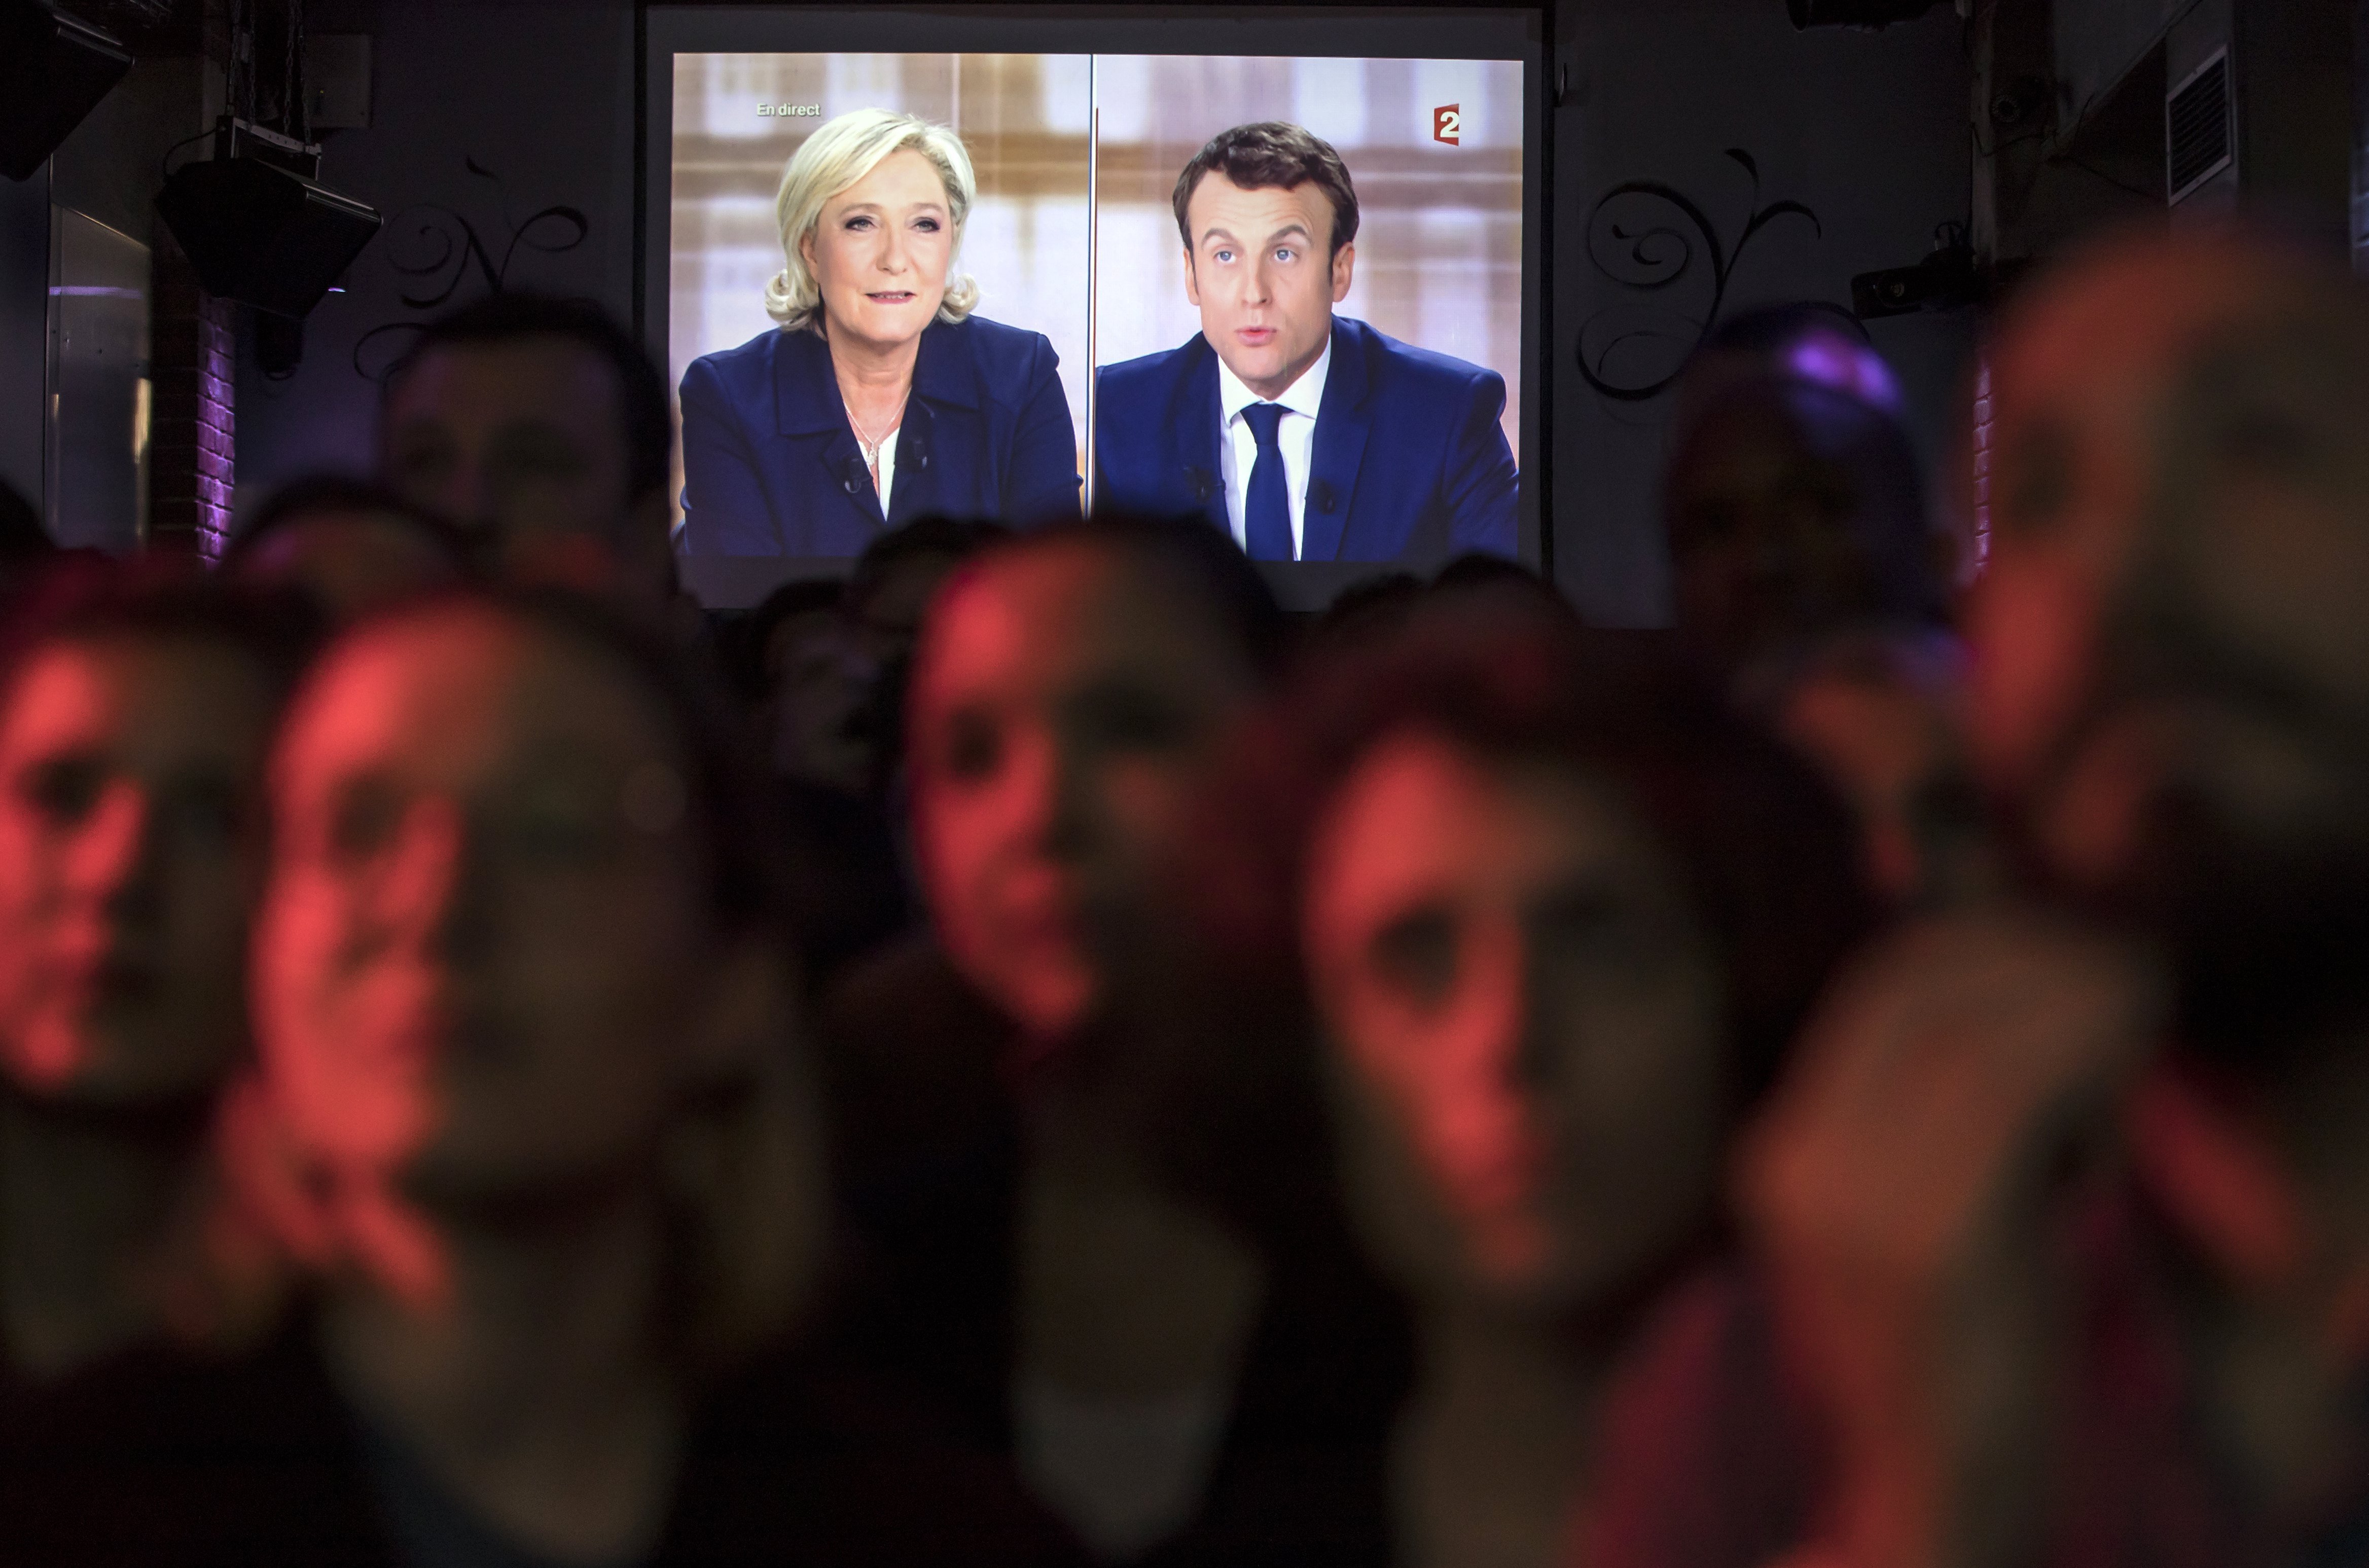 La negra que vota a Le Pen y el blanco de izquierdas que elige a Macron